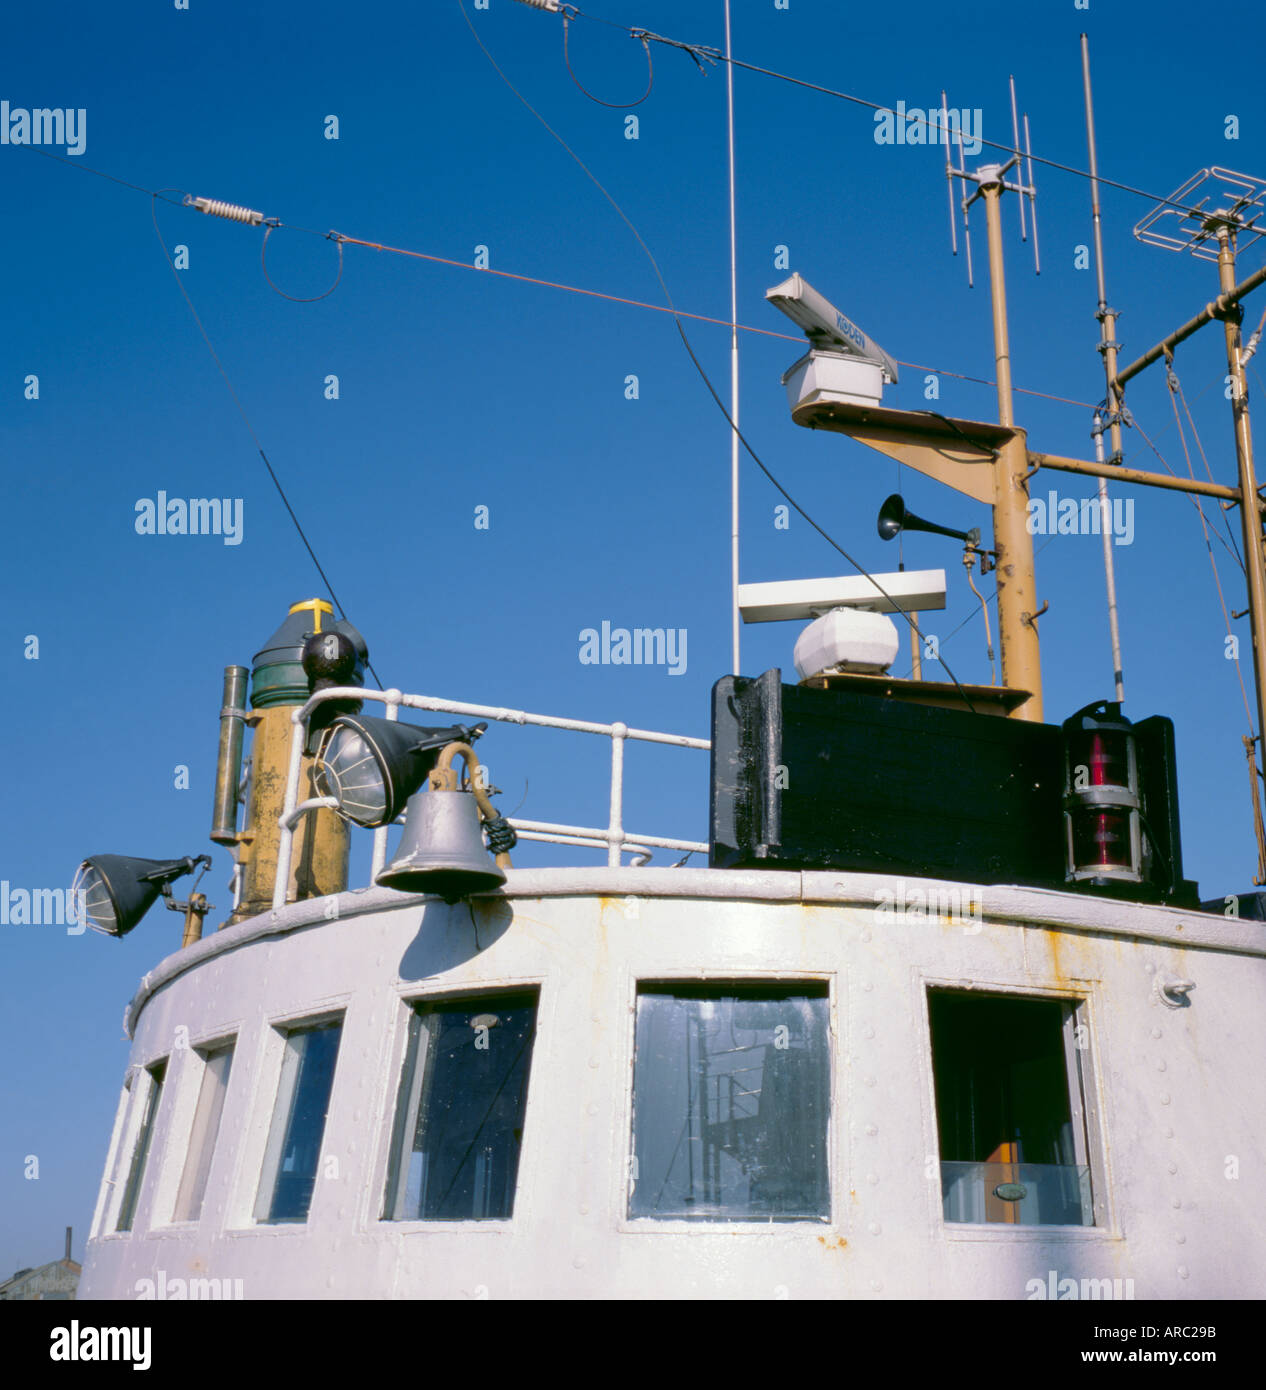 Détail de la toiture de la cabine de la superstructure d'un bateau de pêche, montrant les phares de recherche, des navires bell, antenne radio et antennes, Banque D'Images